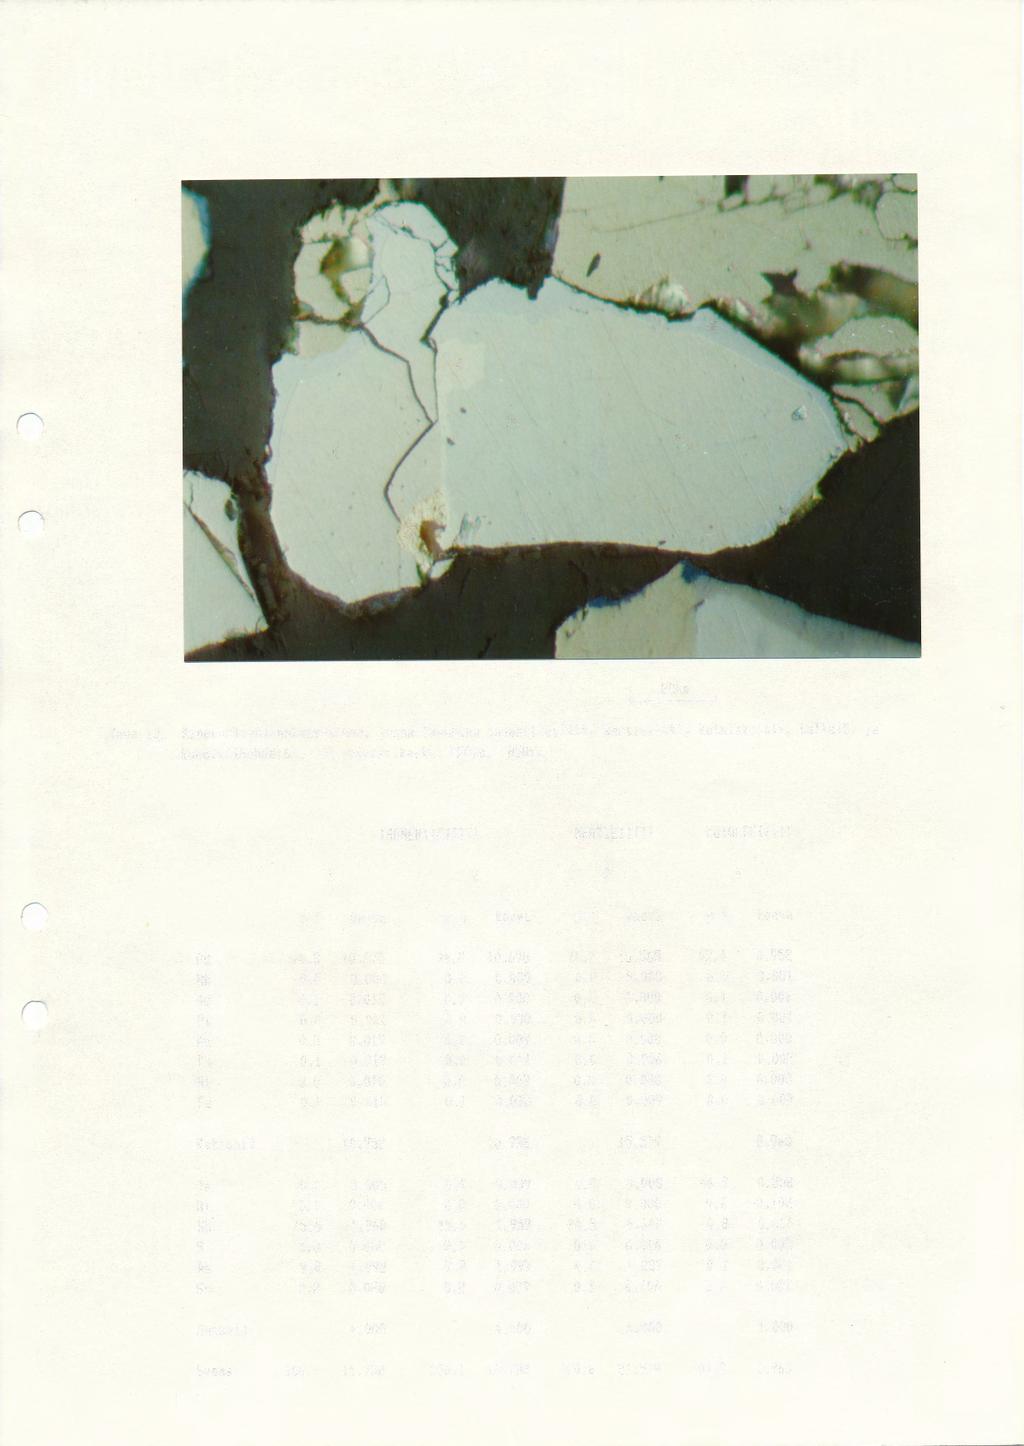 Kuva 13. Mineraaliyhteenkasvettuaa, jossa faaseina isomertieiitti, ffiertieiitti, kotulskiitti, kultal51 ja kobolttihohdel61. T~ryp~yt~rikaste -250pm. 850x.